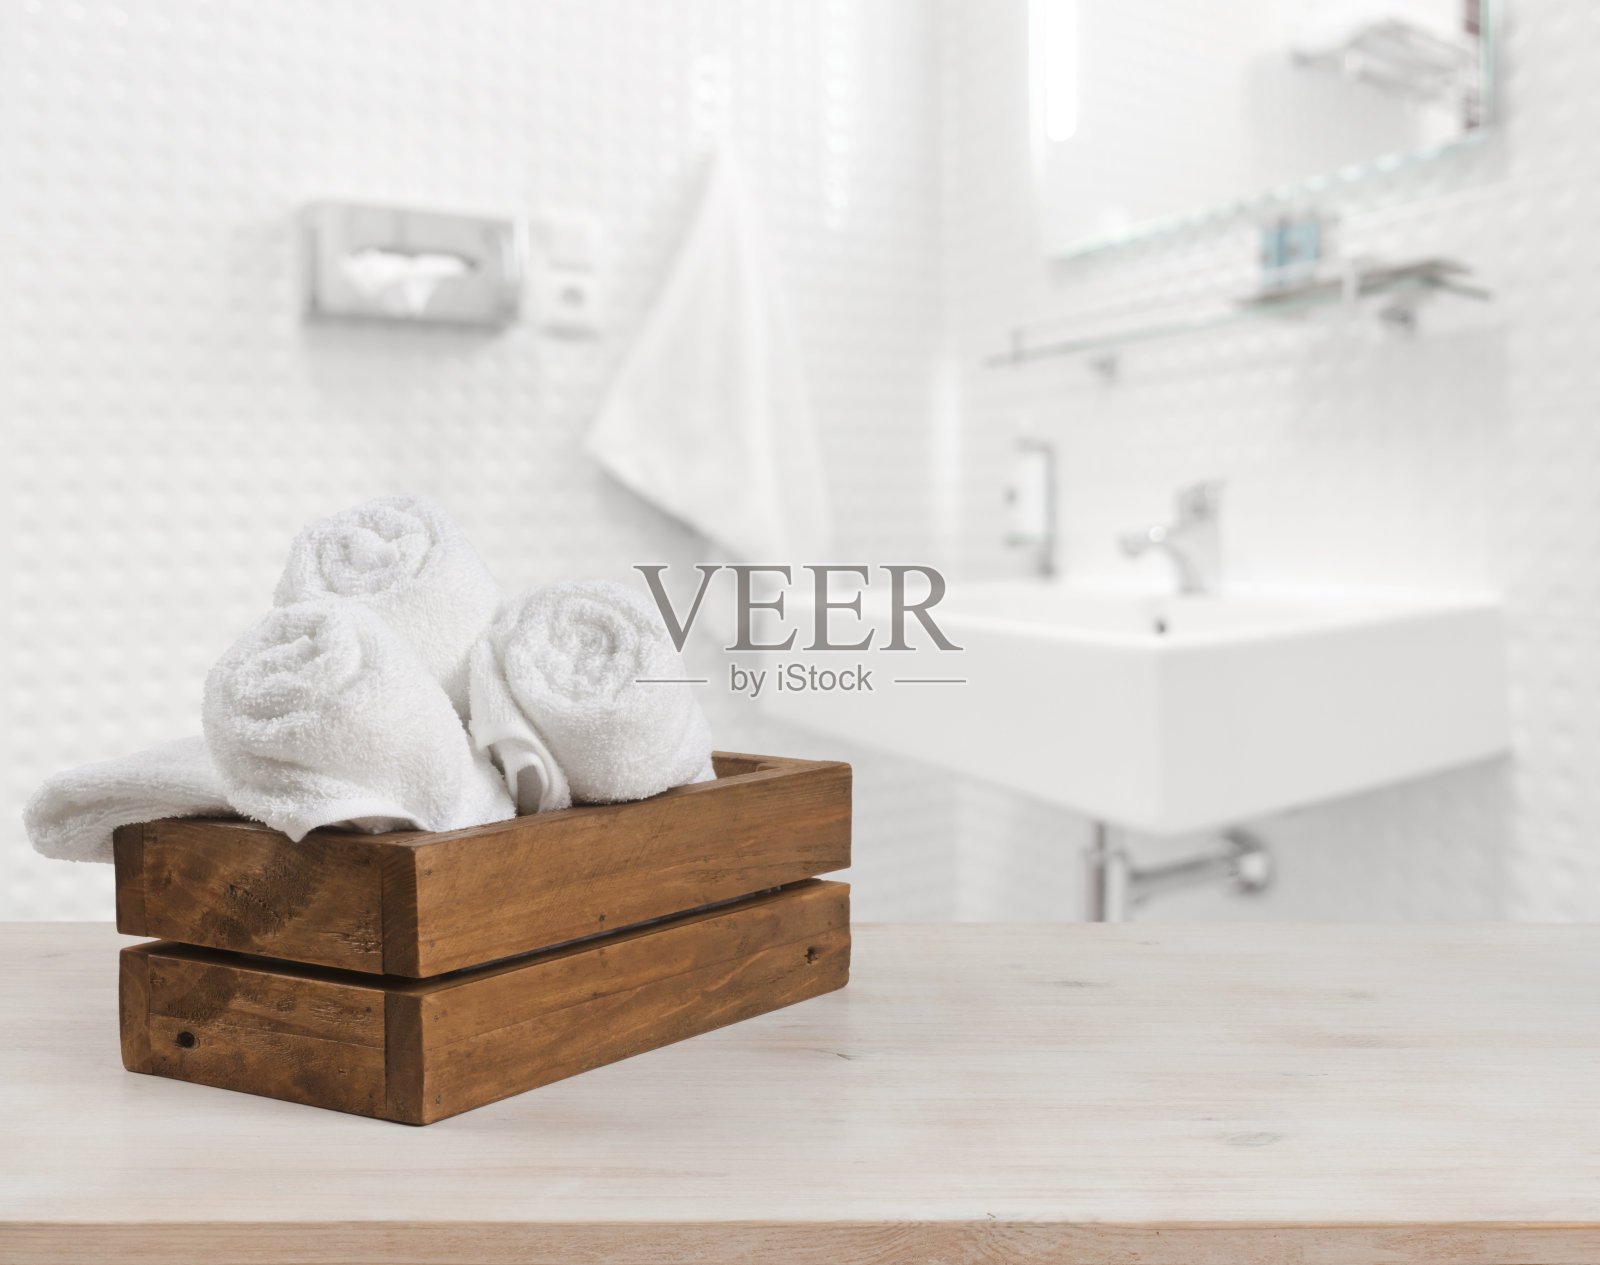 木质的盒子，白色的温泉浴巾，模糊的浴室背景照片摄影图片